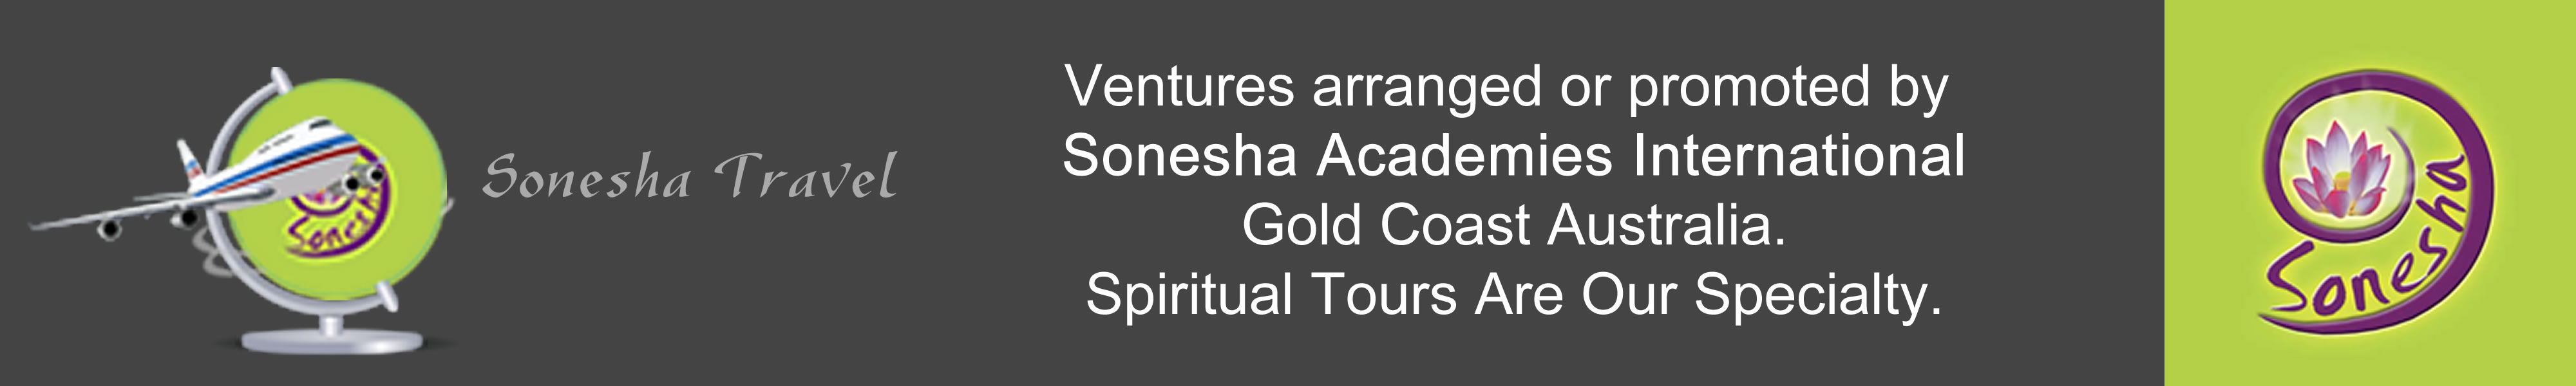 Sonesha Travel footer